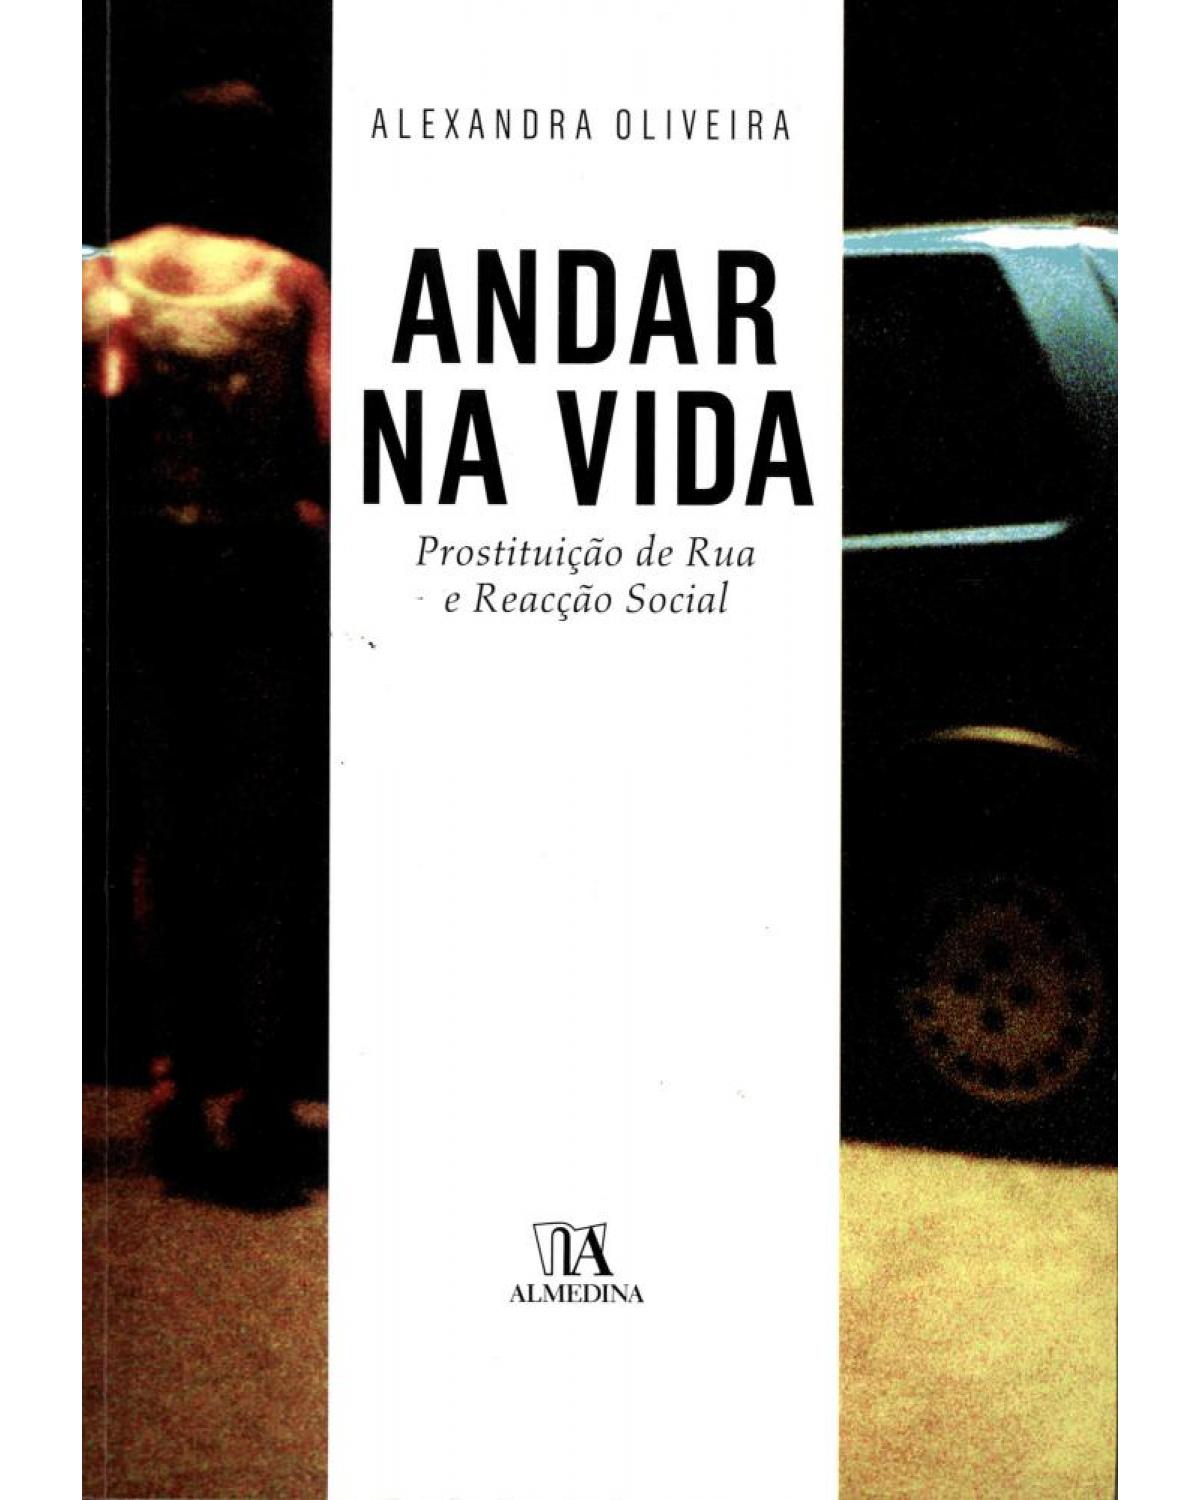 Andar na vida - prostituição de rua e reacção social - 1ª Edição | 2011